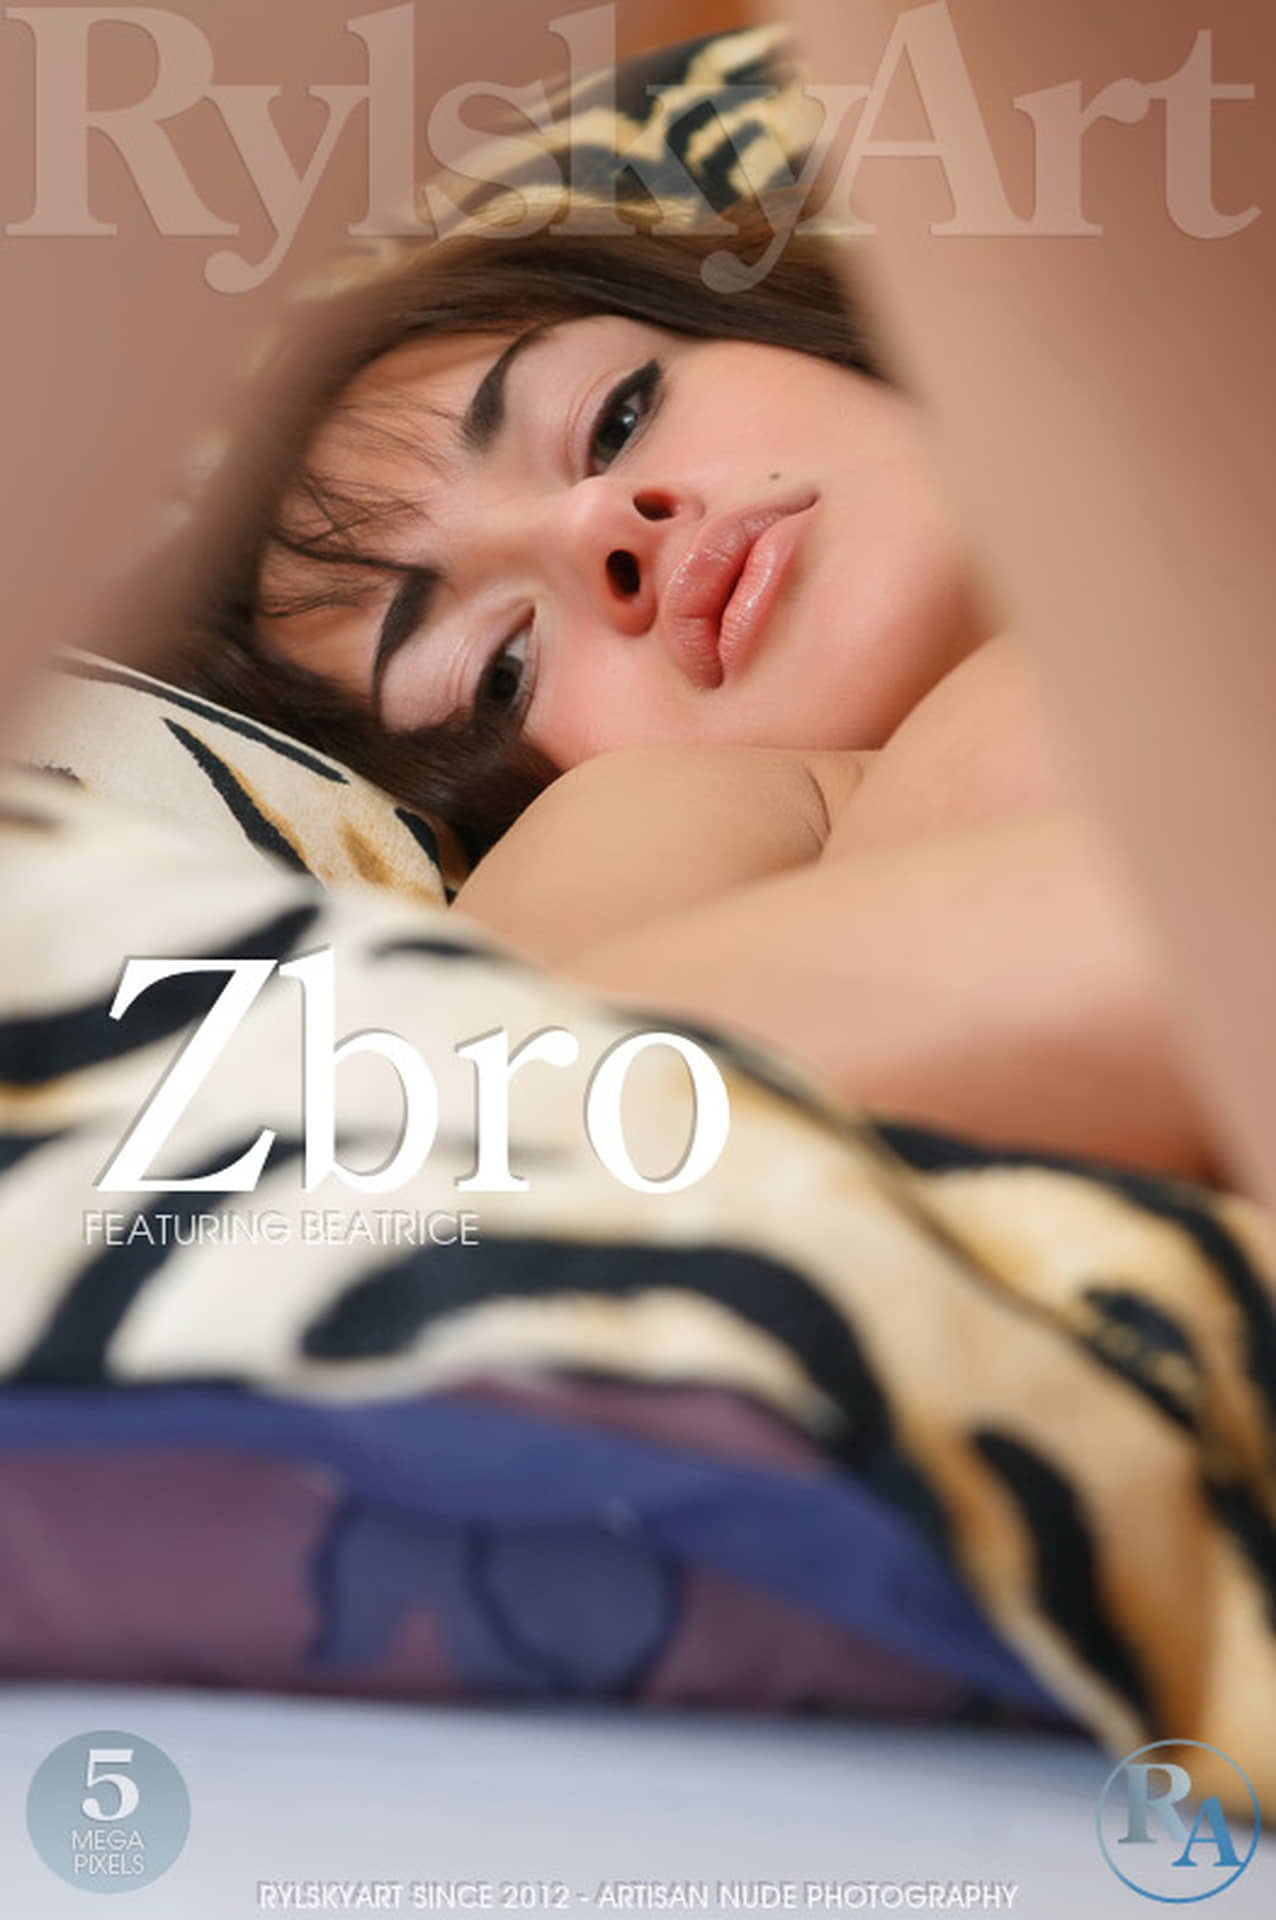 斑马条纹上的美眉——ZBRO-BEATRICE